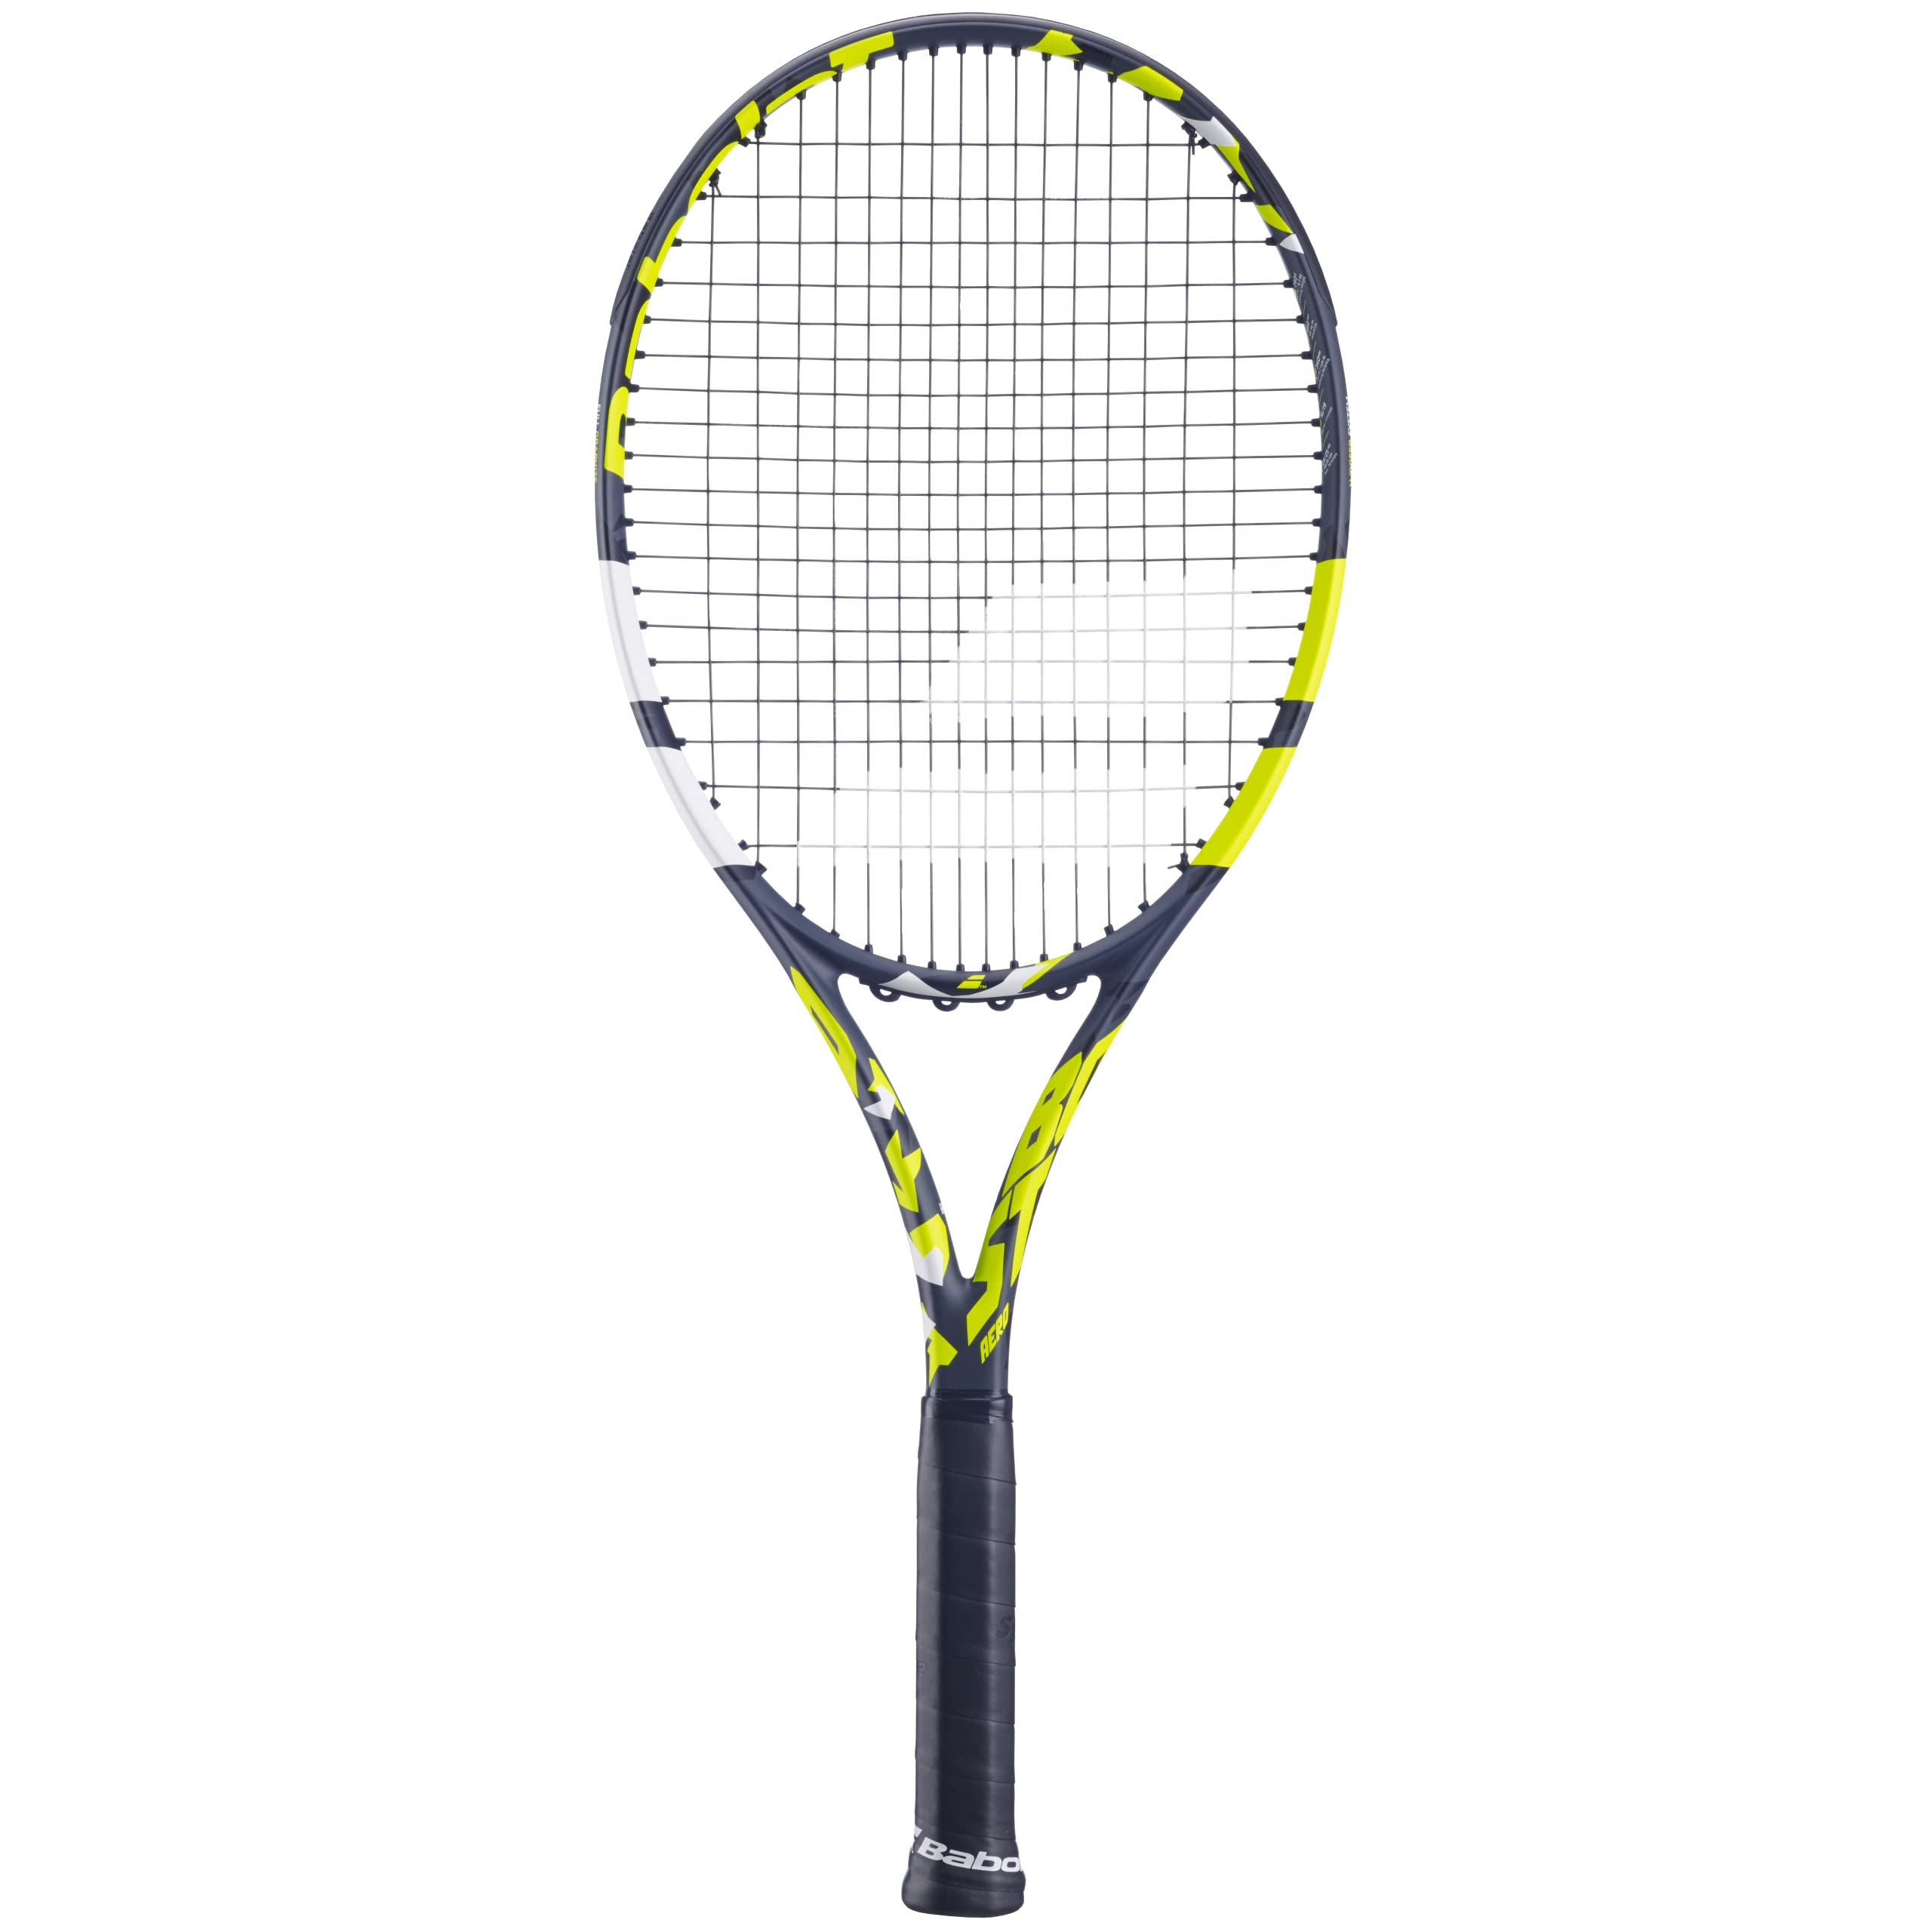 Babolat - Tennisschläger für Erwachsene Boost Aero - Leichter Schläger für Damen oder Herren - Besaitet und Rahmen aus Graphit für Leichtigkeit und Power beim Spielen - Größe 3 - Farbe: Grau/Gelb